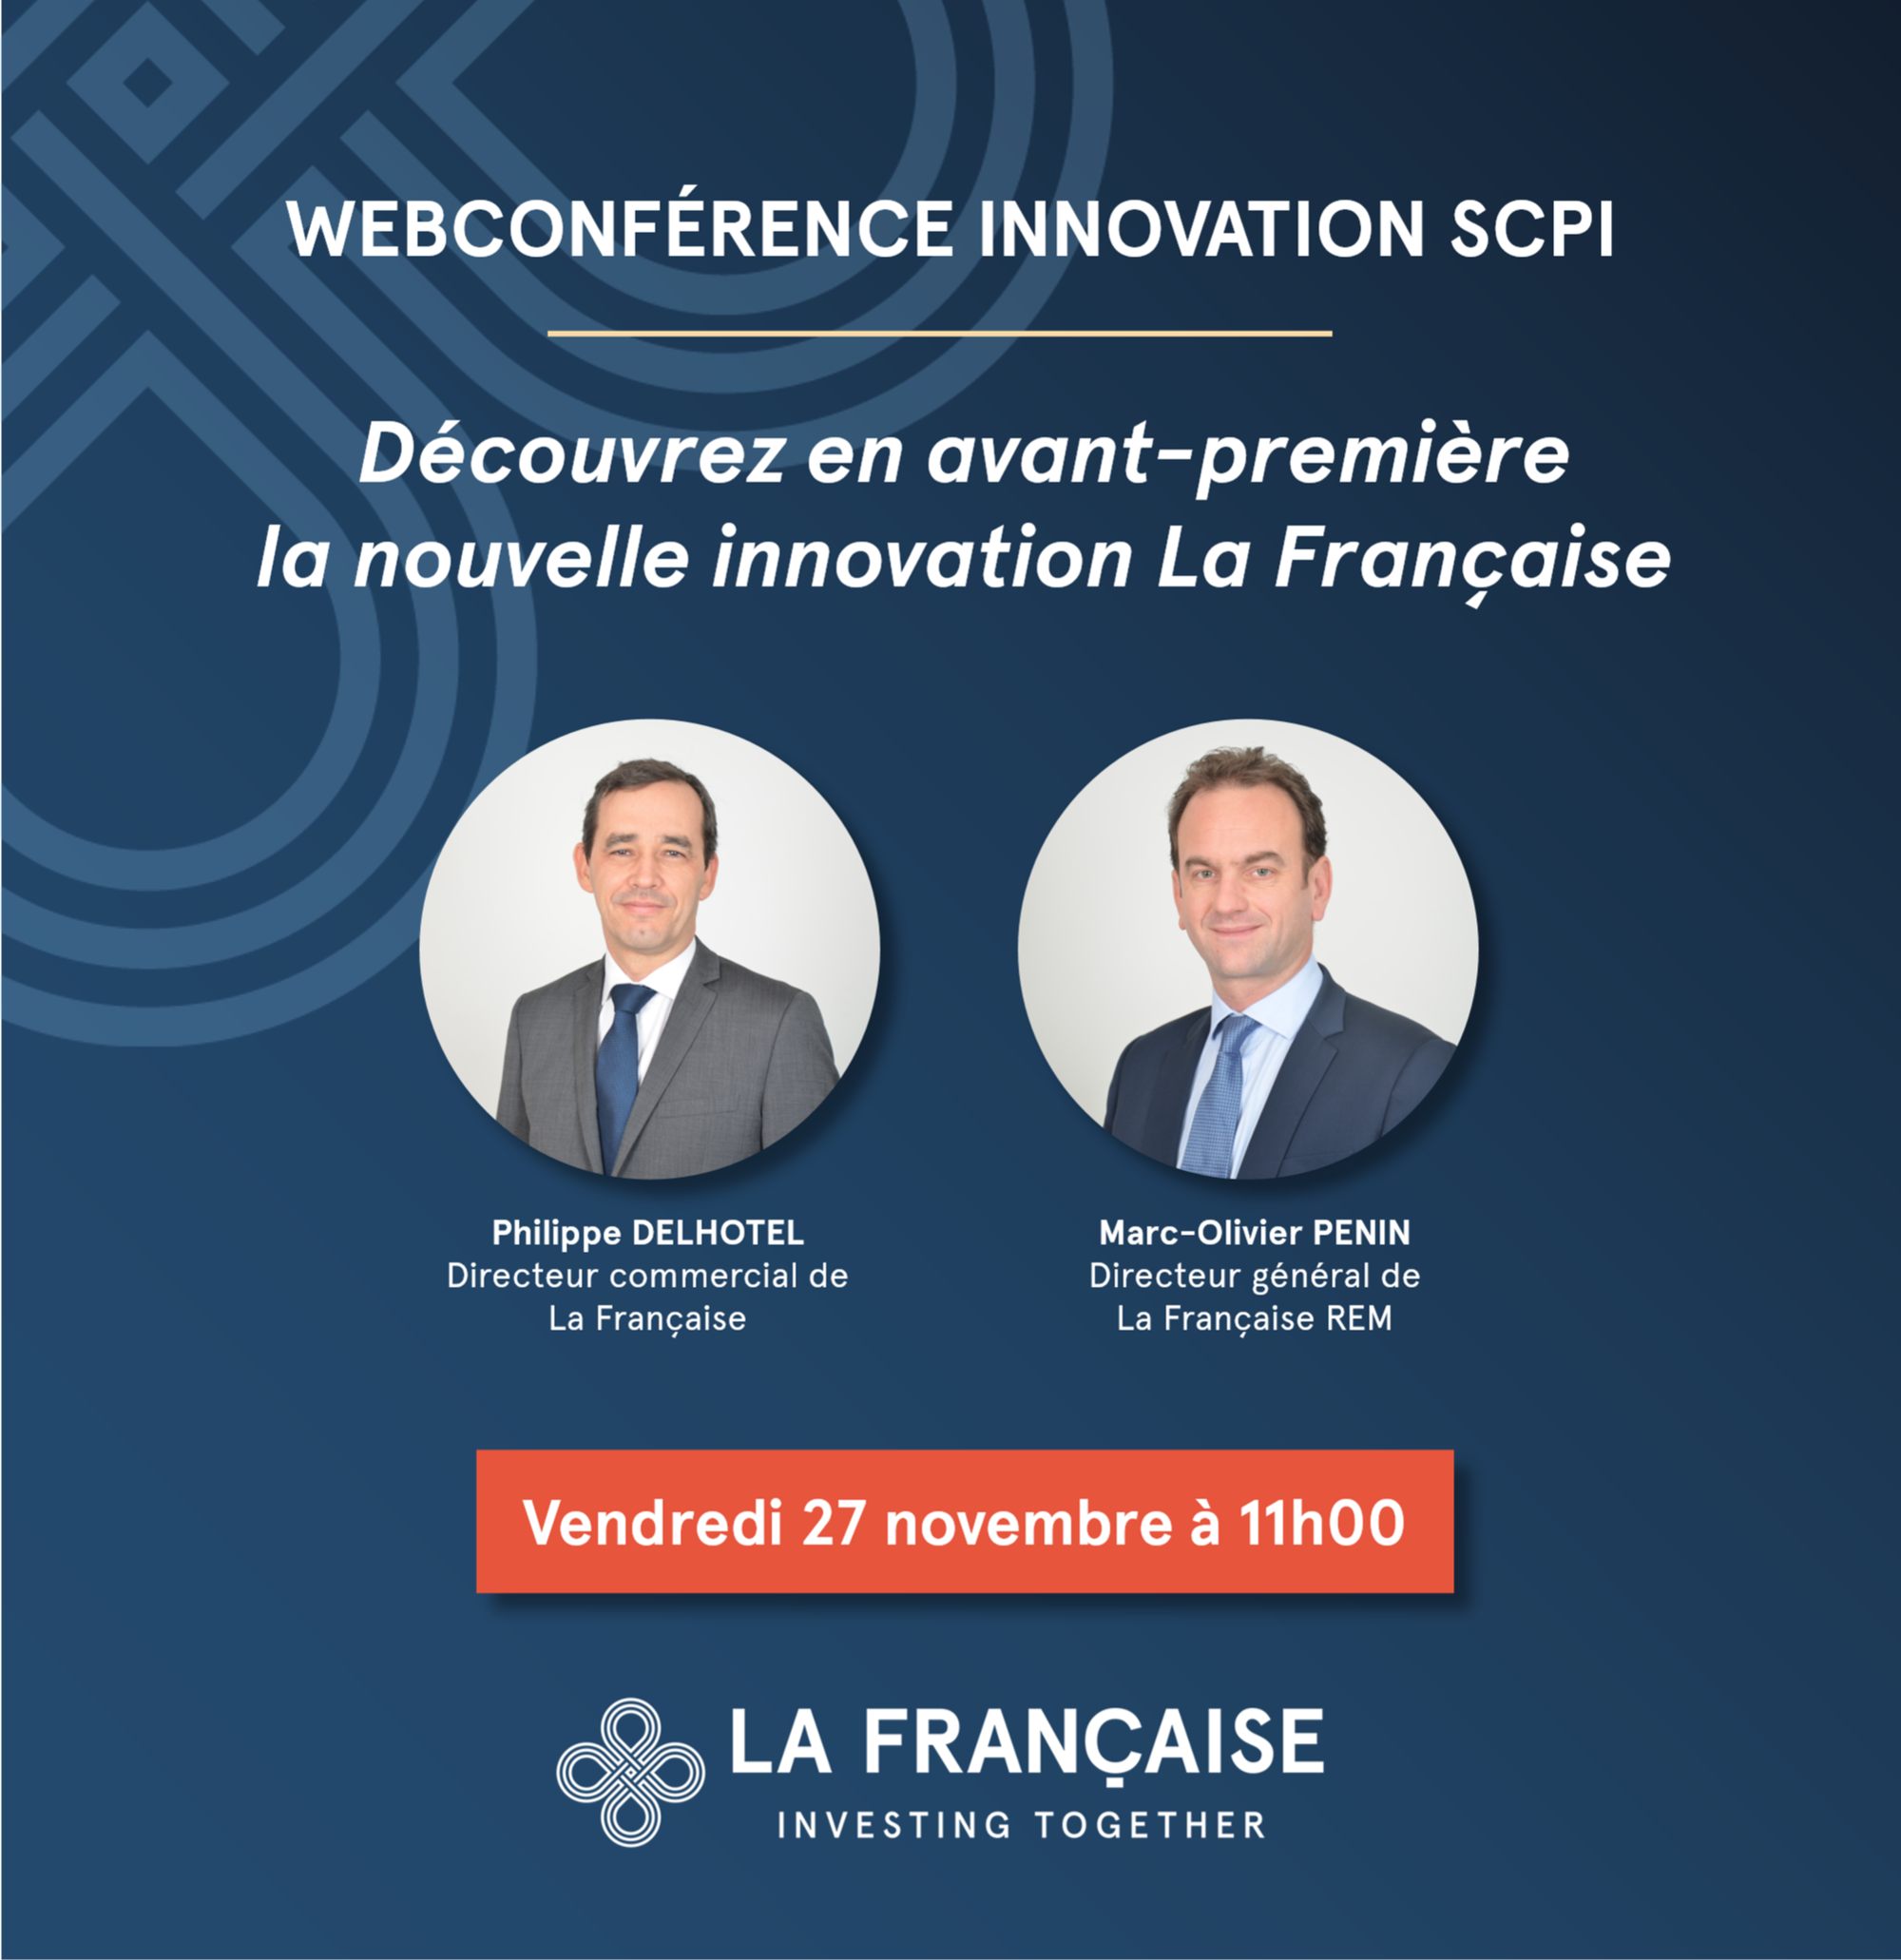 Webconference - découvrez en avant-première la nouvelle innovation SCPI La Française